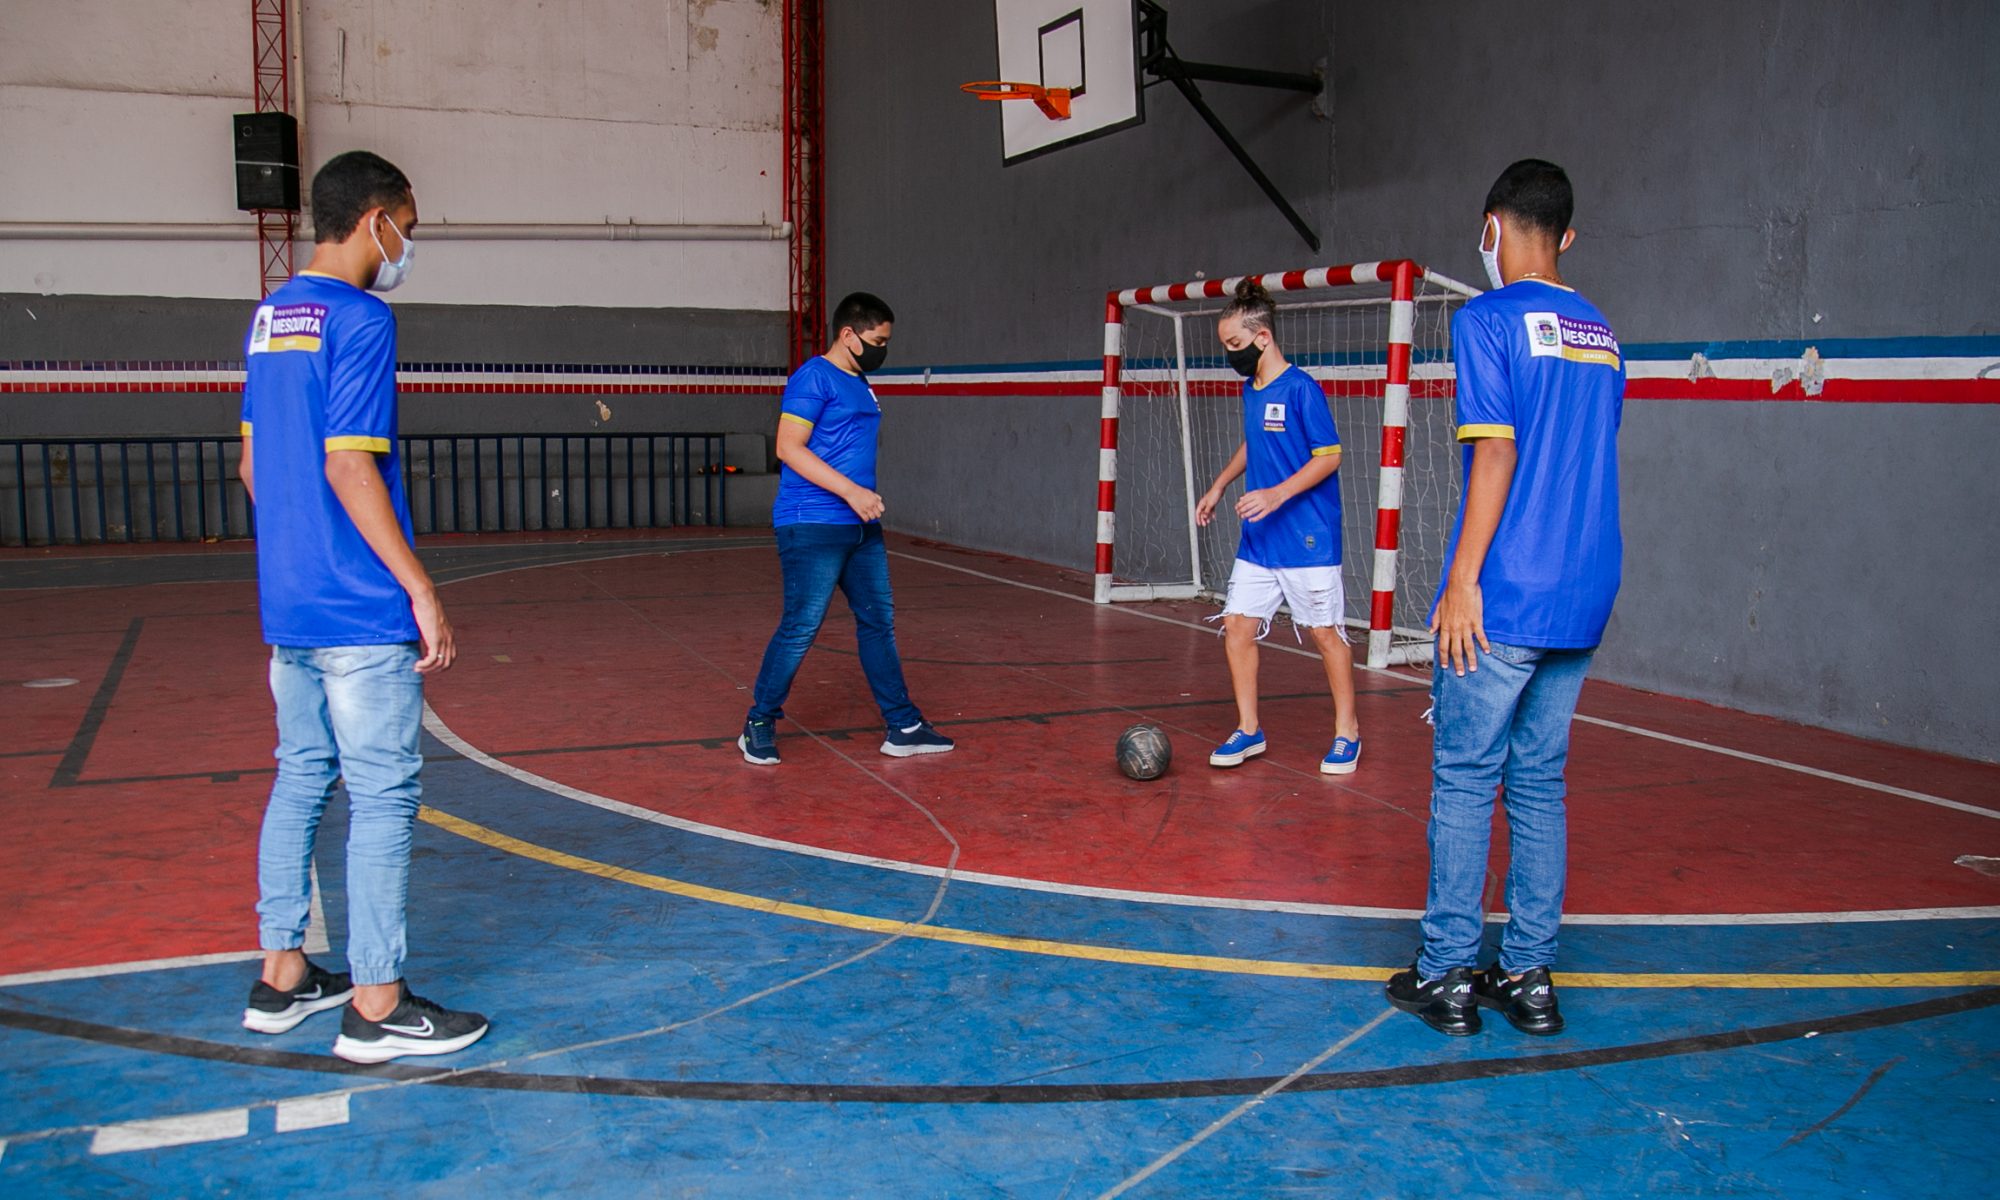 Proposta de treinamento integrado de futsal e futebol, na formação  desportiva do atleta de futebol de campo na categoria sub 17 anos